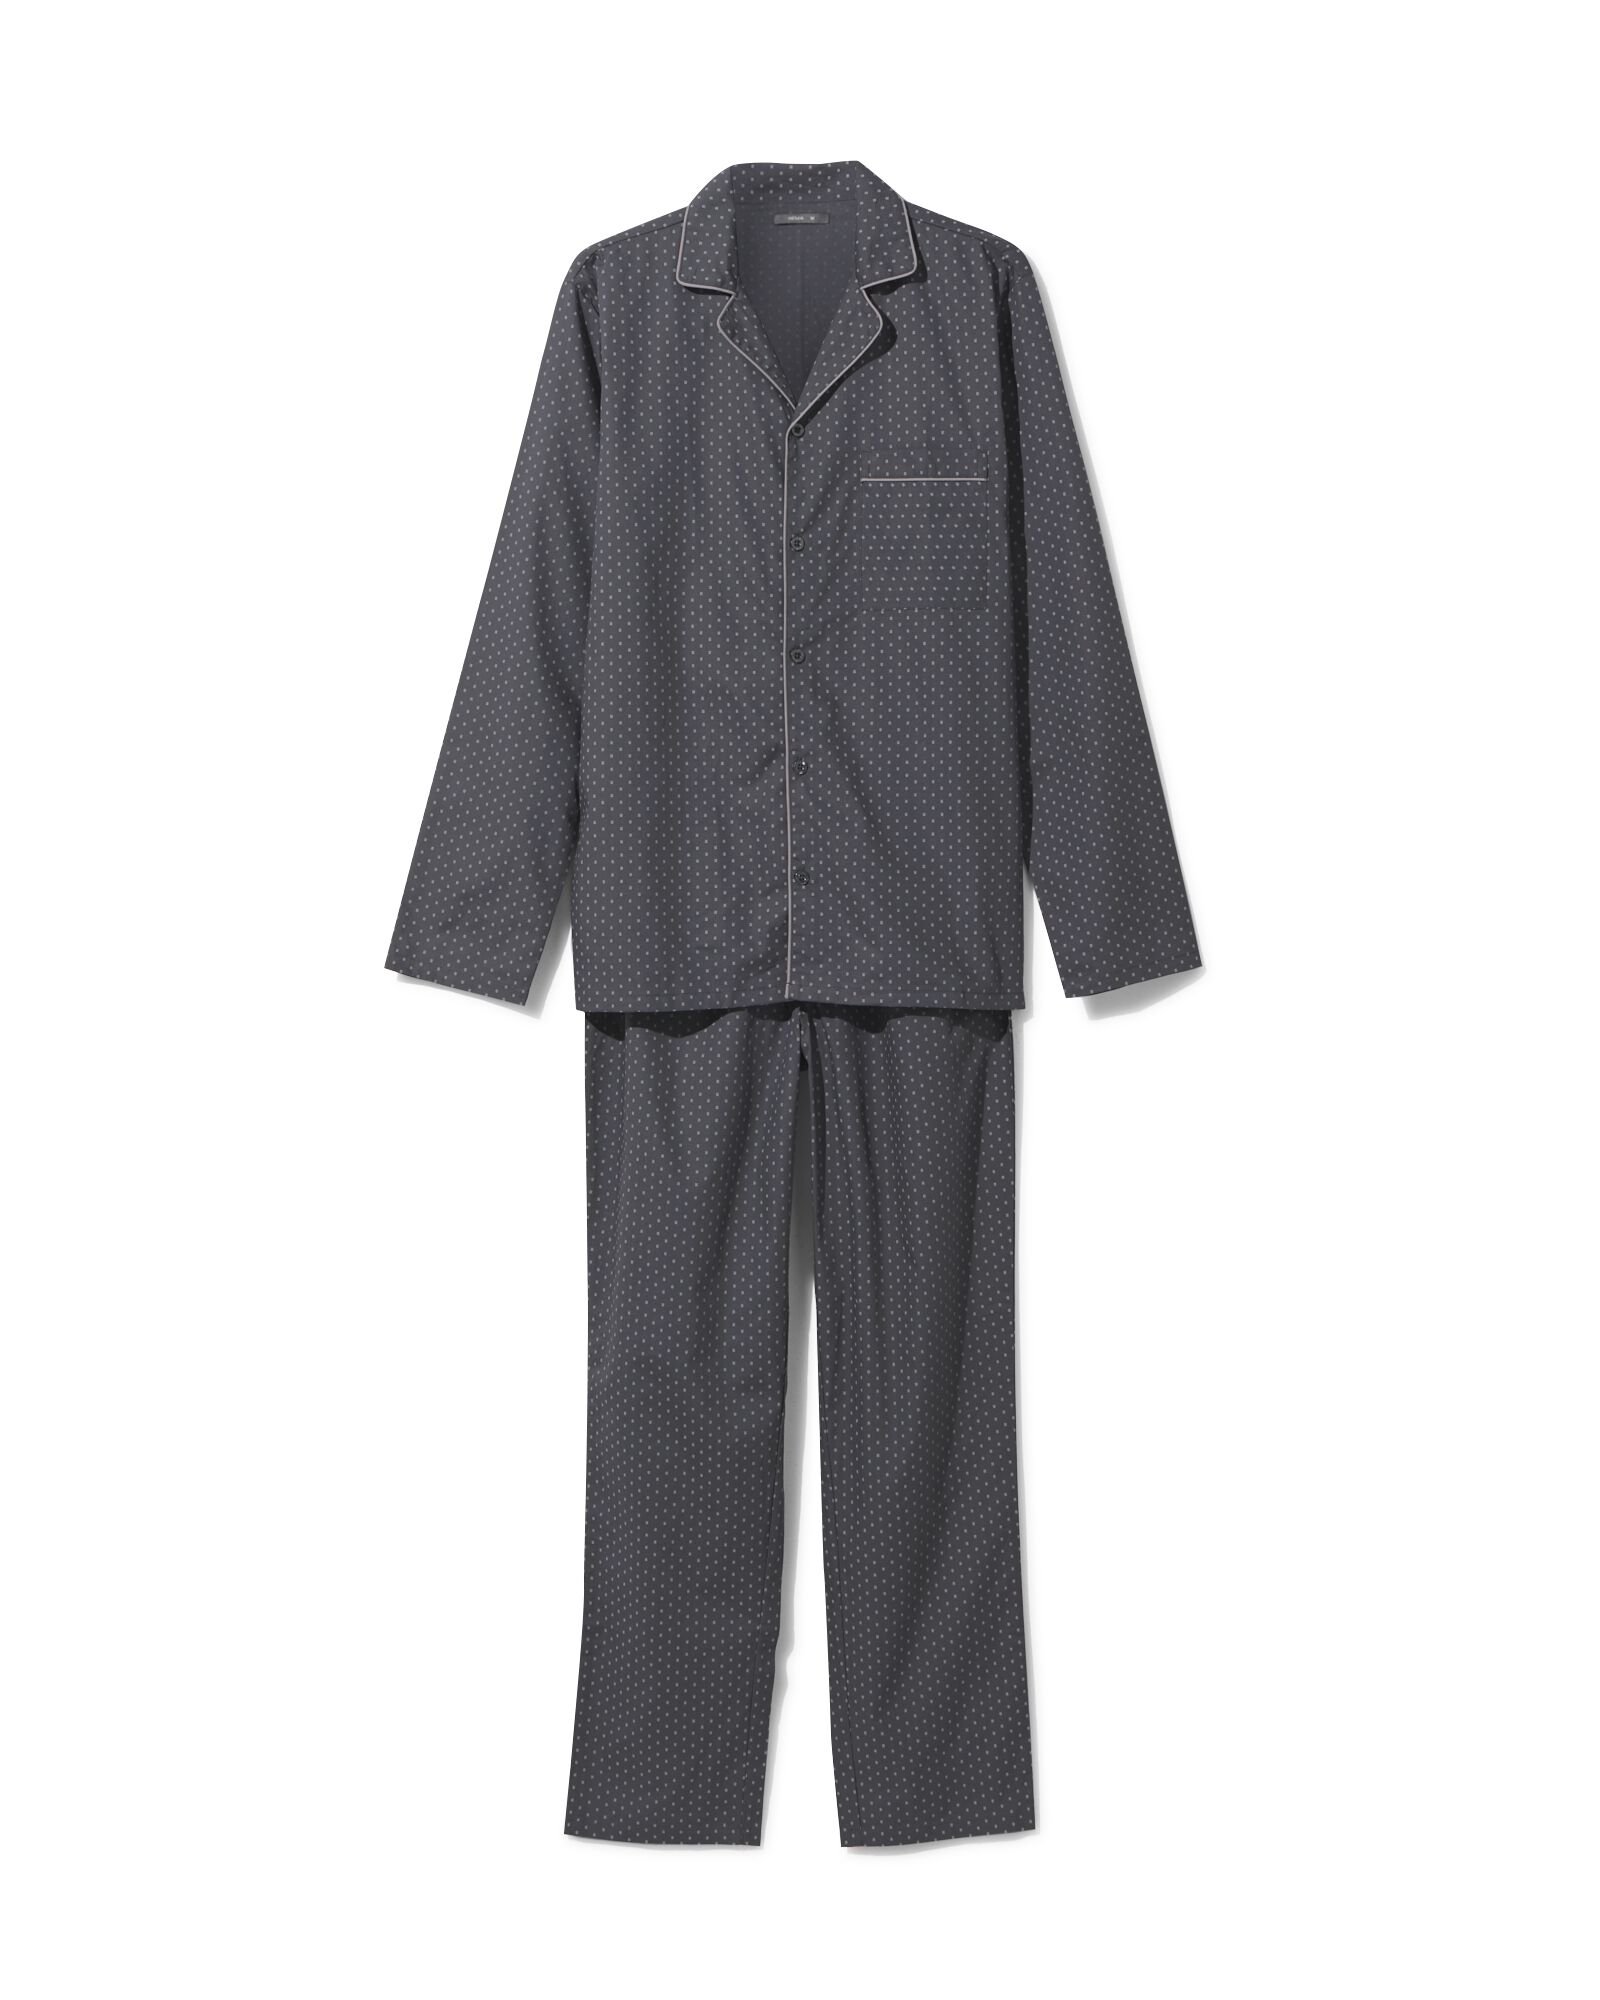 pyjama homme a carreaux dans sa pochette noir pyjamas et peignoirs